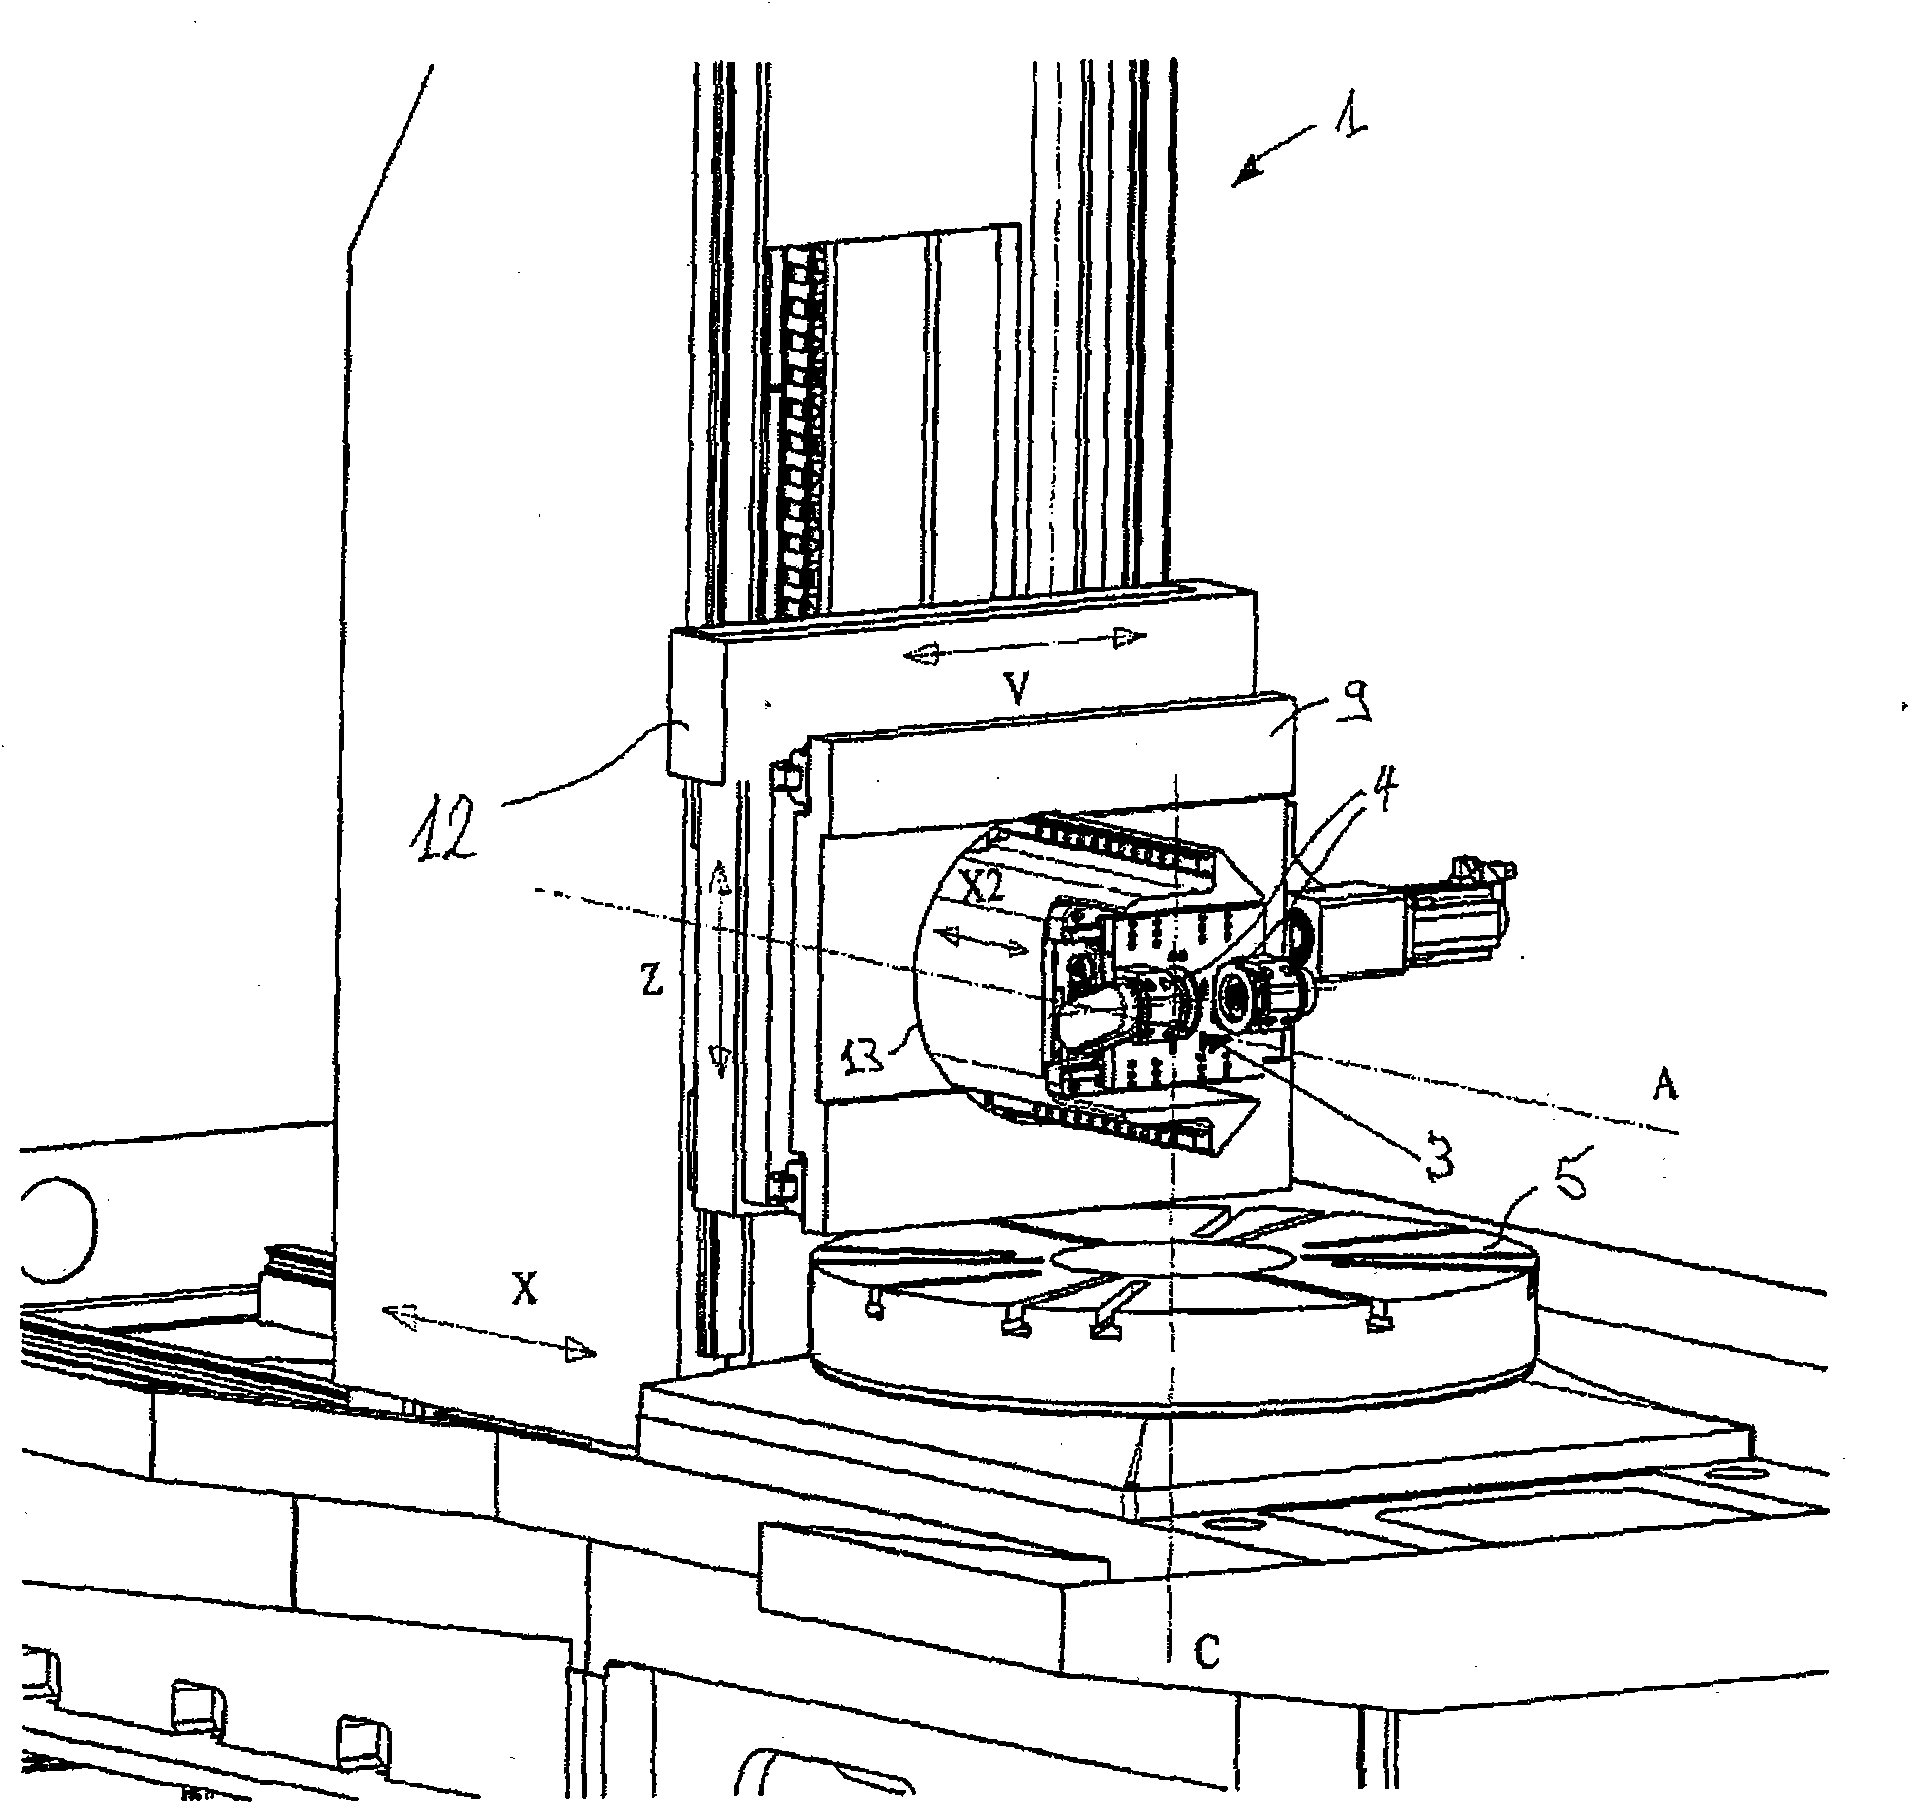 Gear cutting machine